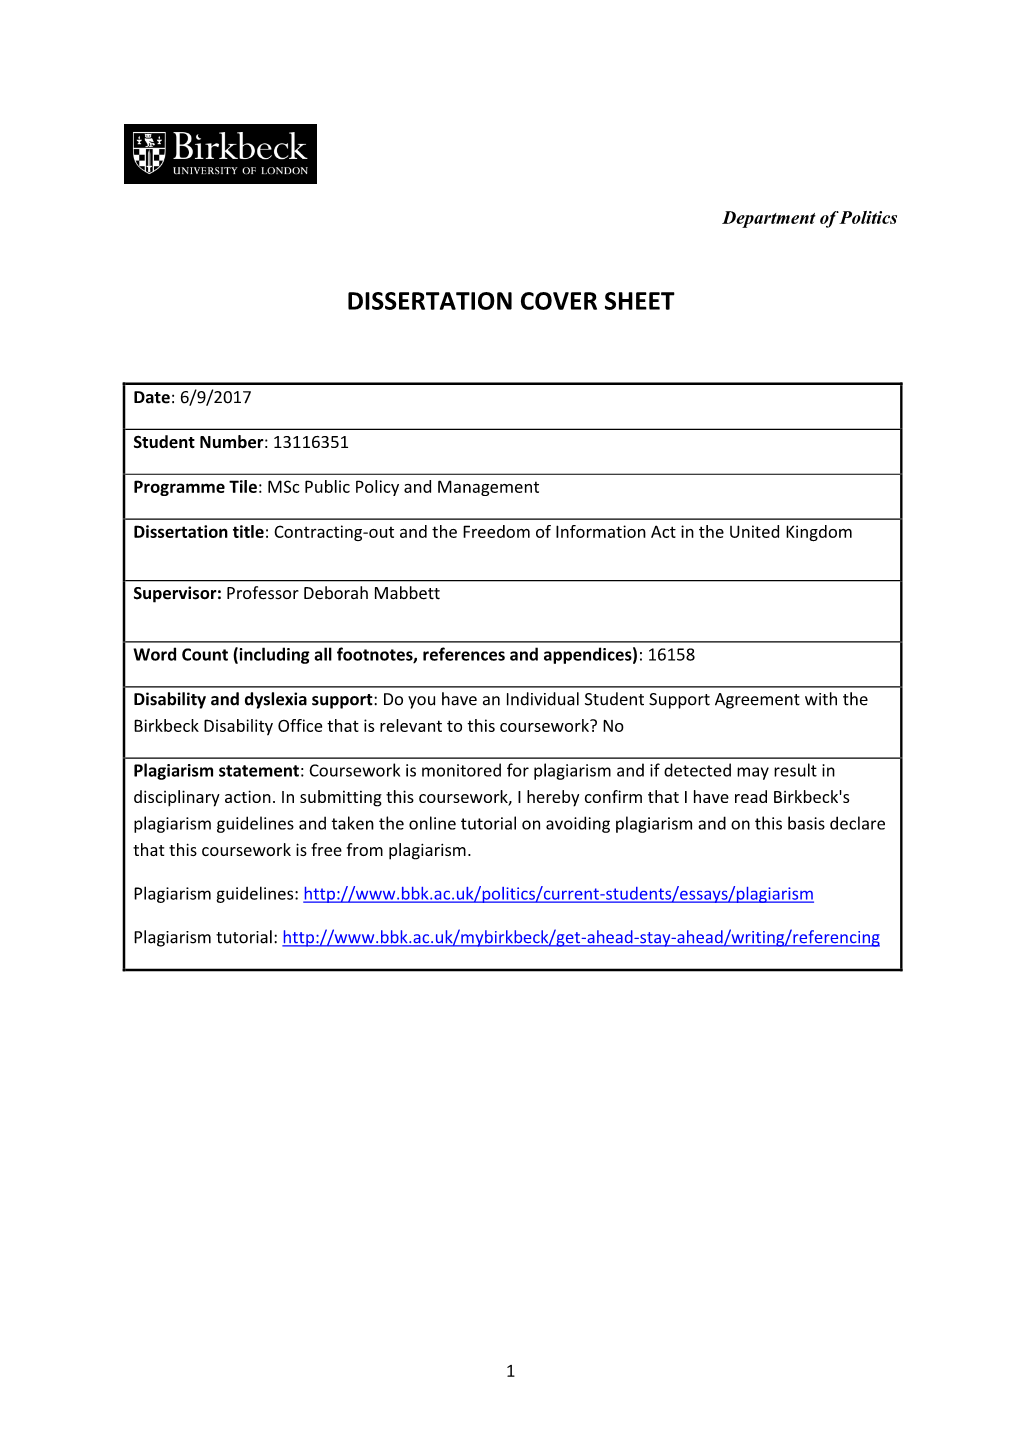 Dissertation Cover Sheet